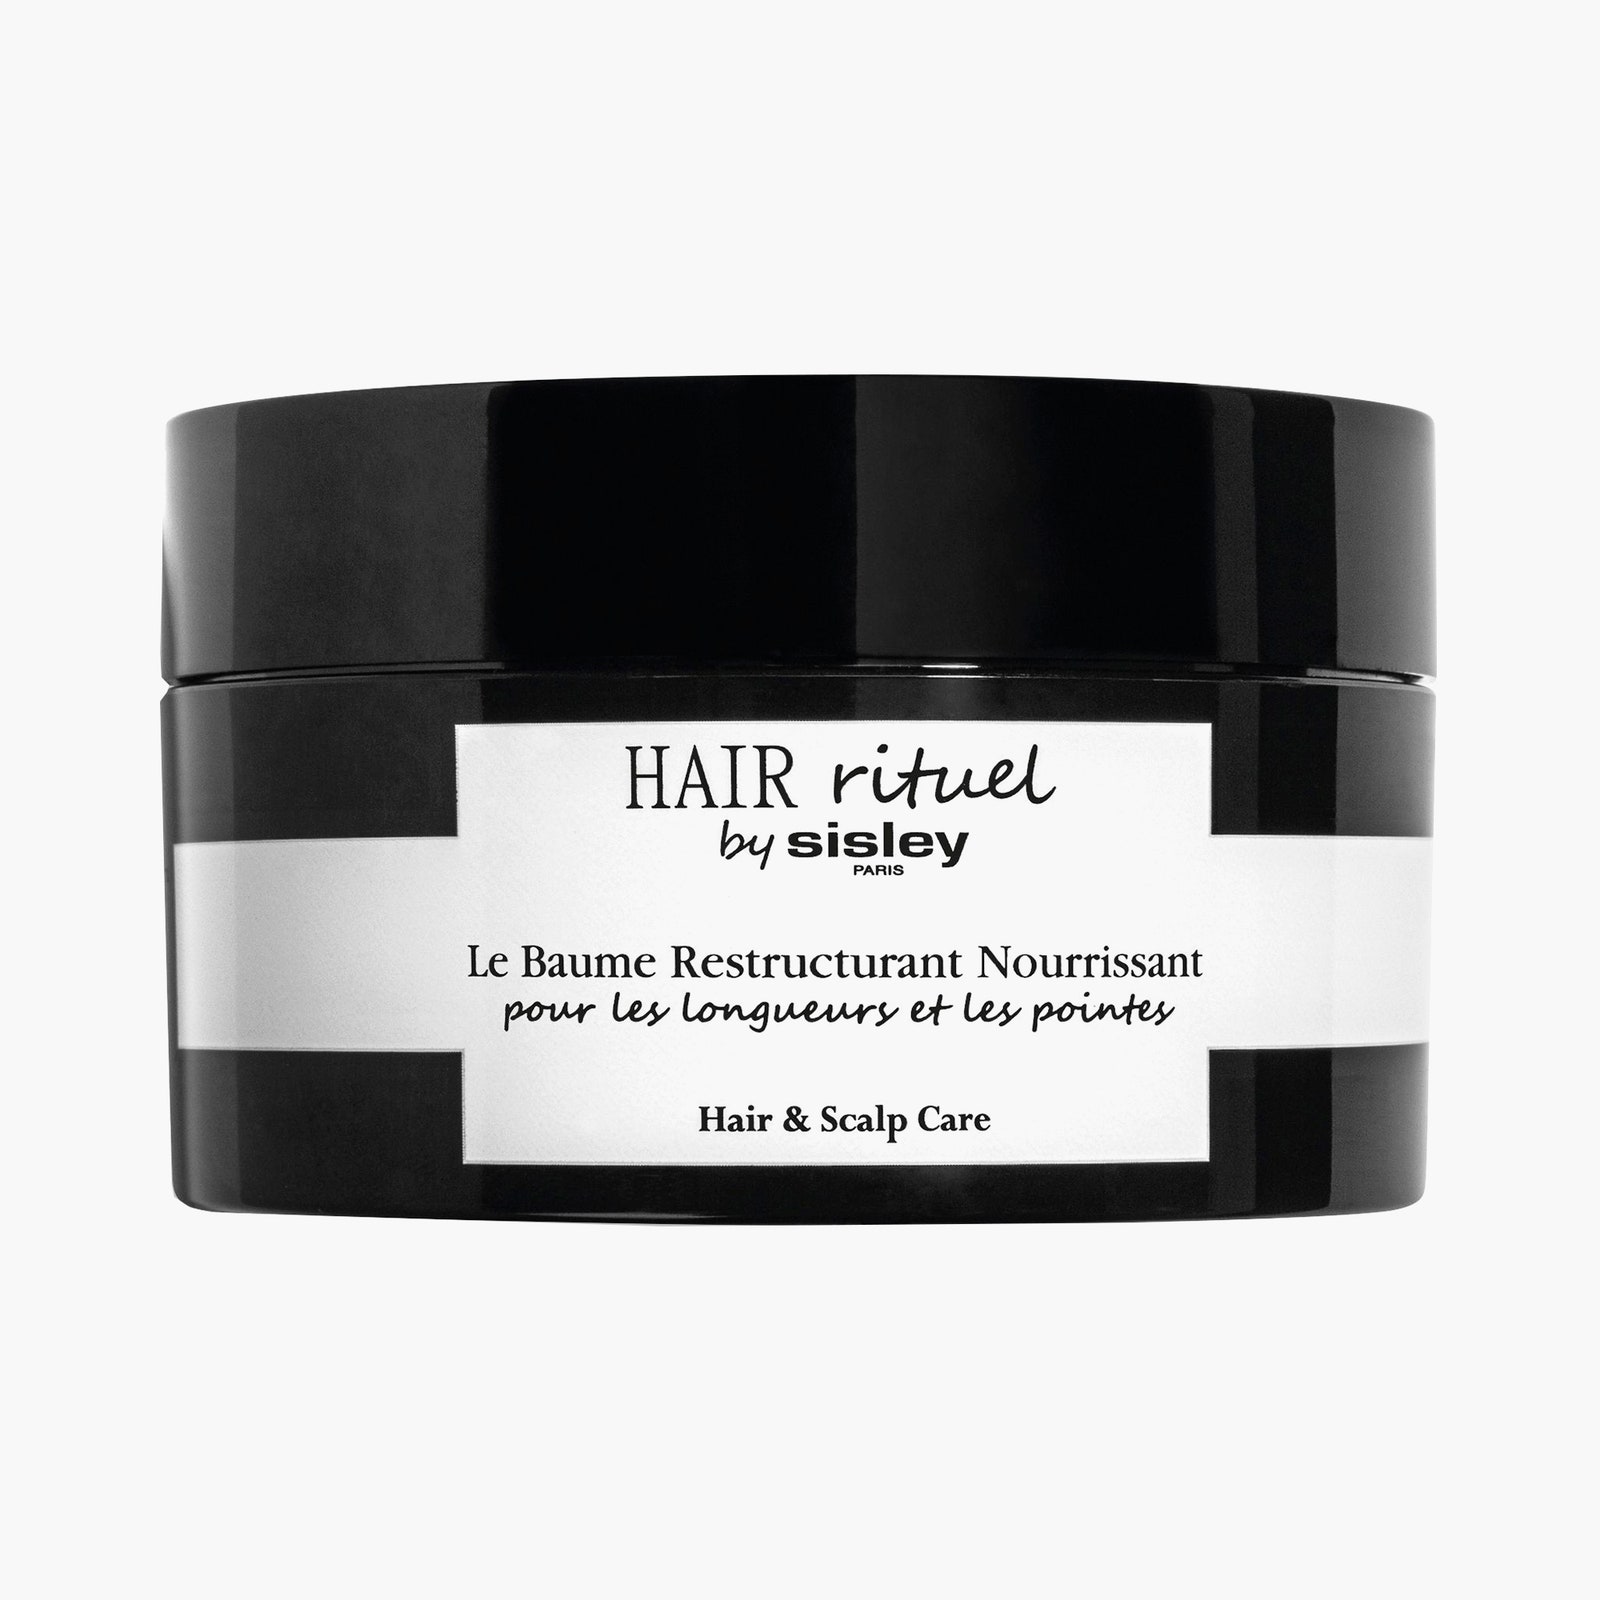 Реструктурирующий питательный бальзам для длины и кончиков волос Hair amp Scalp Care Hair Rituel by Sisley 8190 рублей